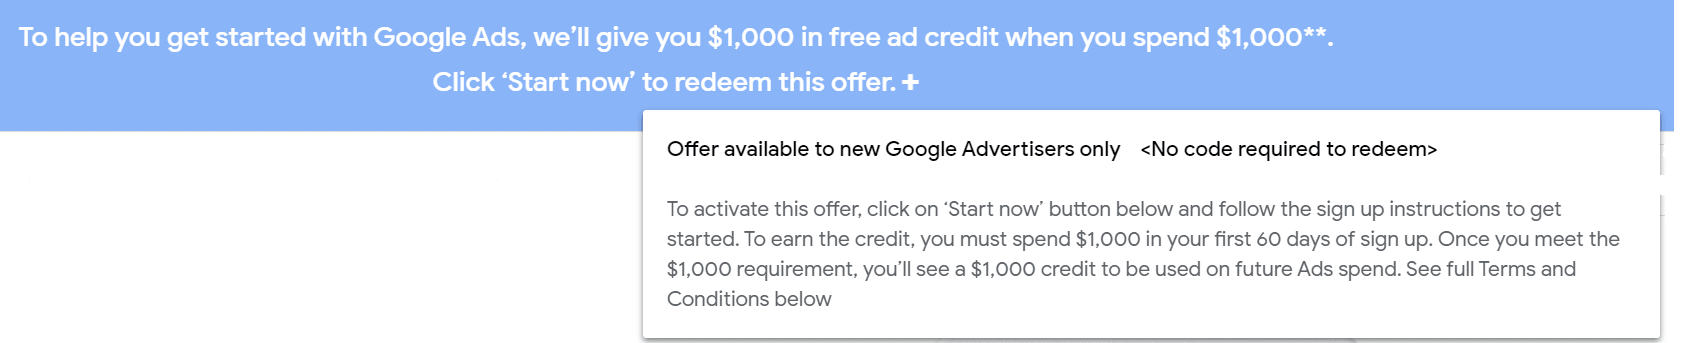 Google ads Offer